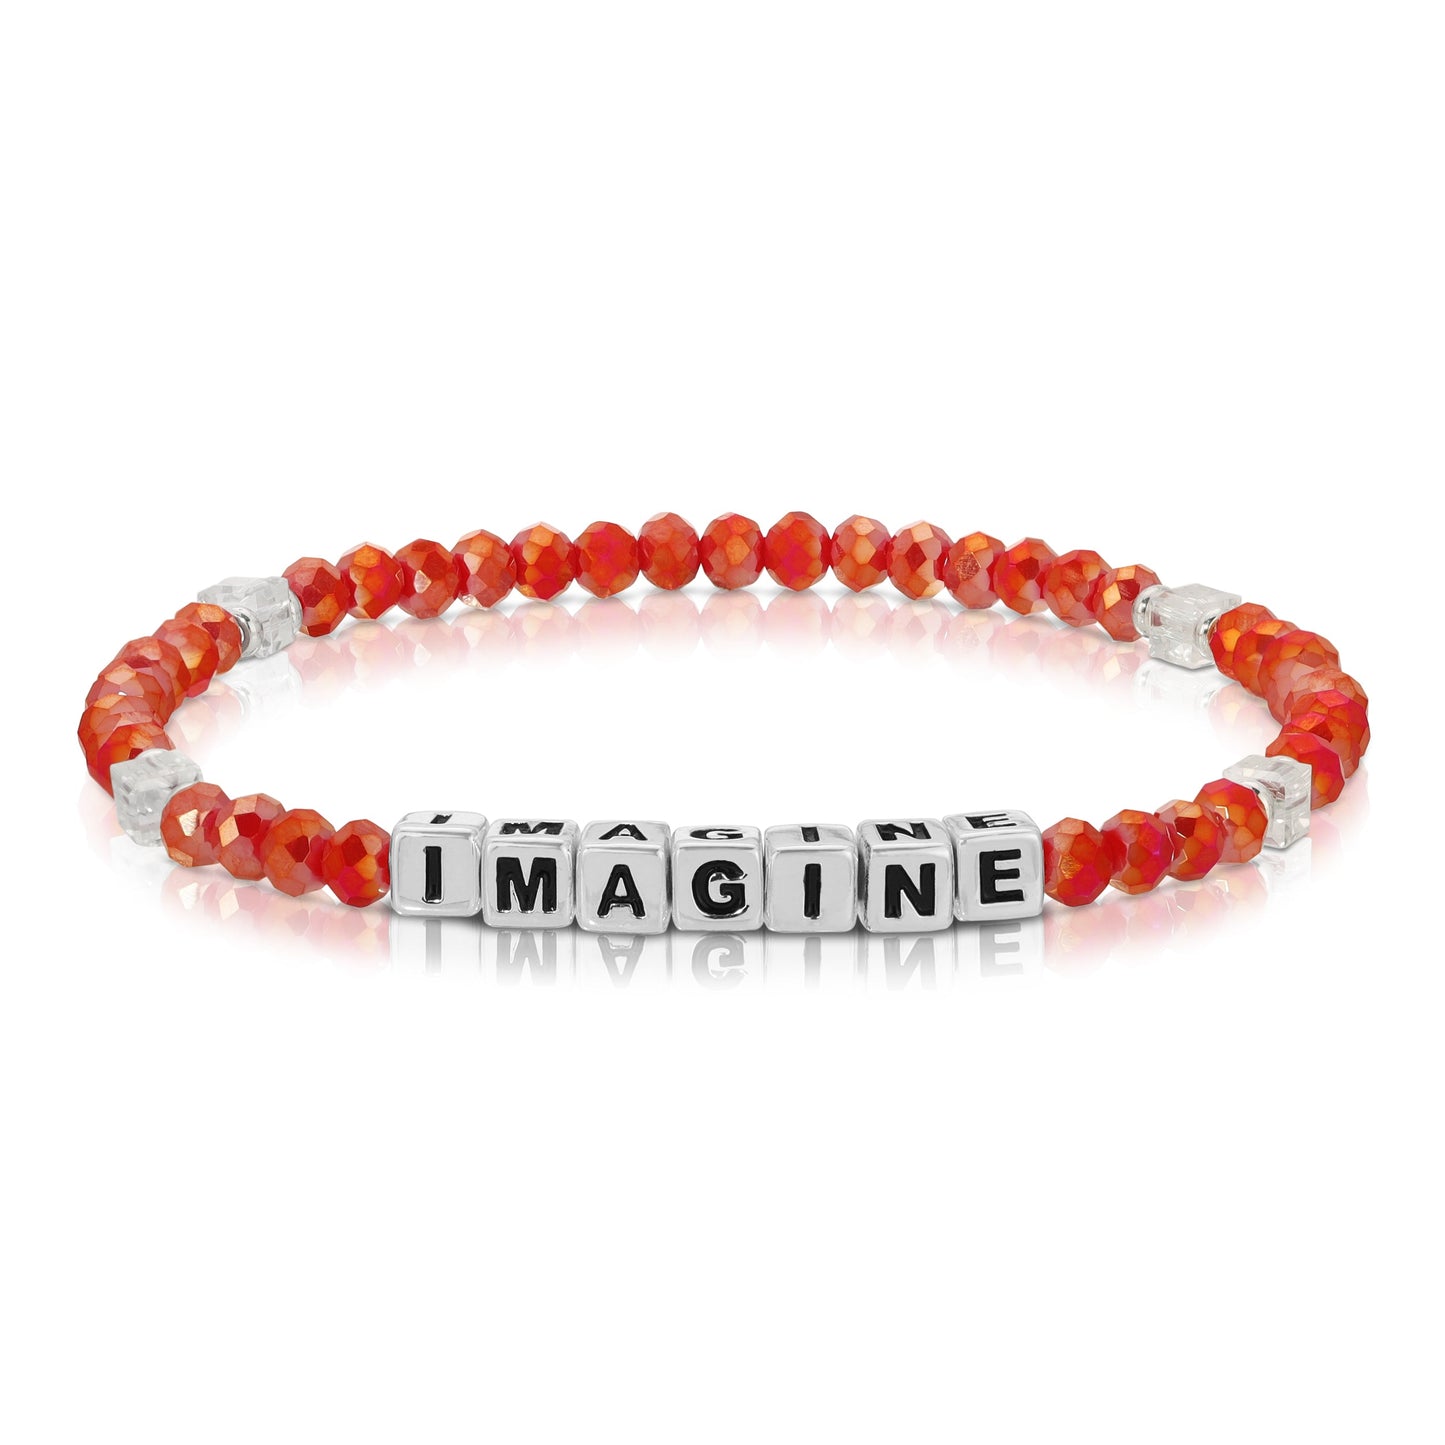 IMAGINE Colorful Words Bracelet